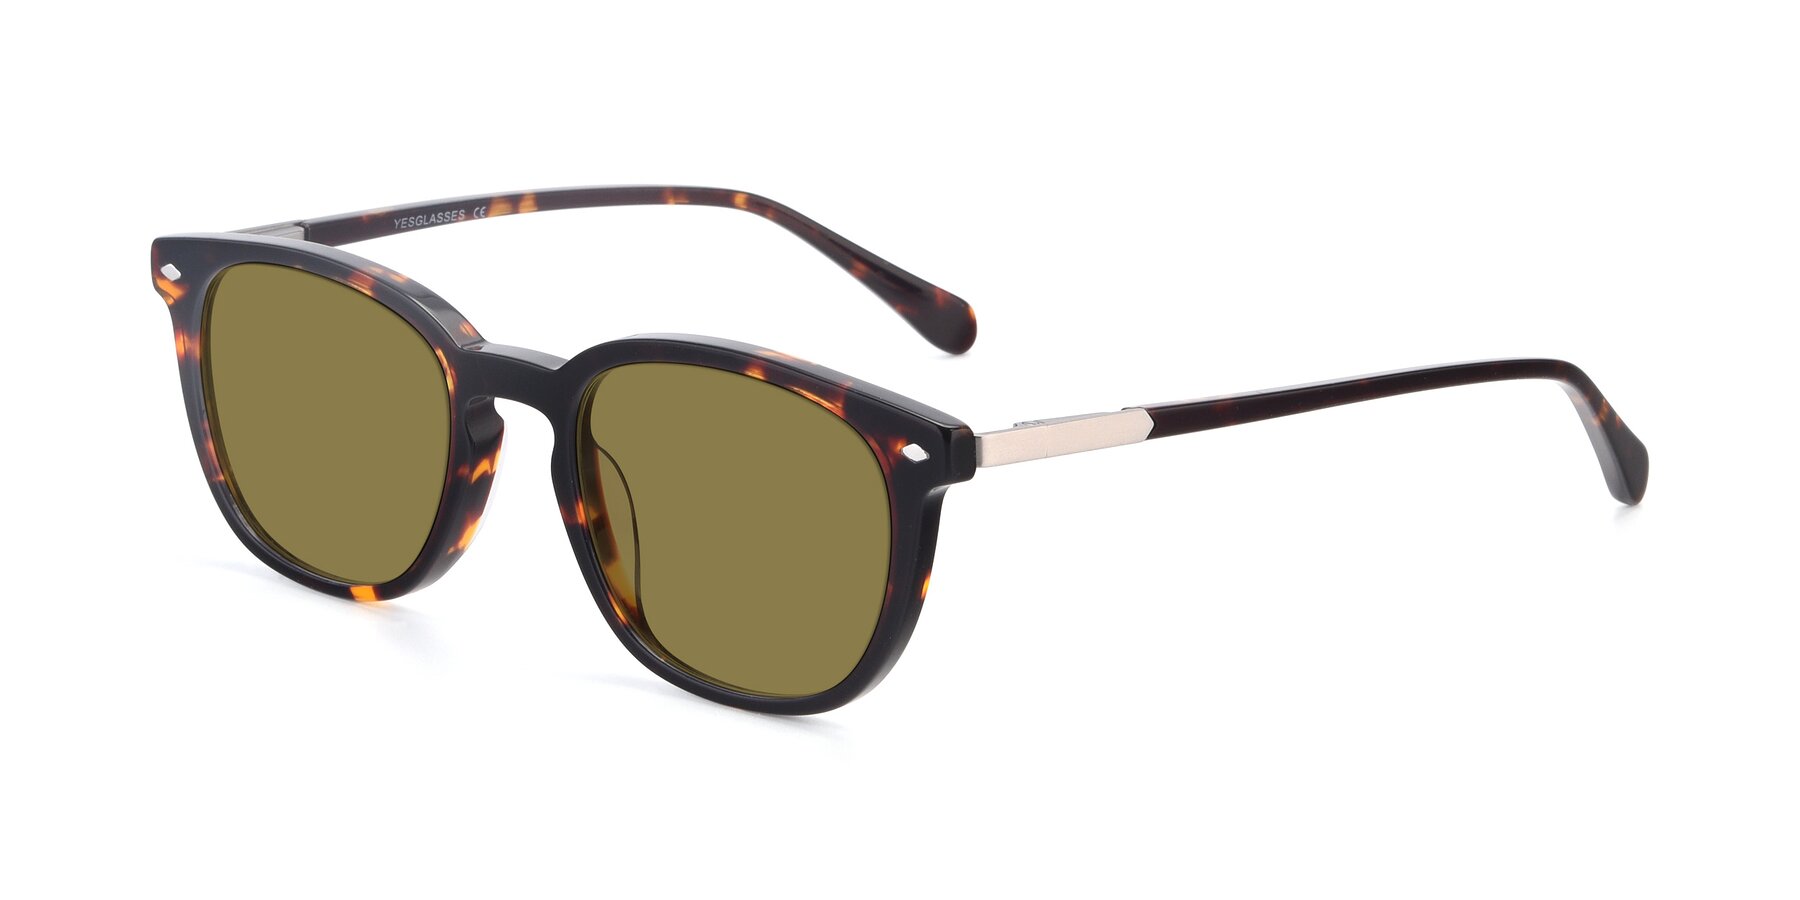 Tortoise Geek-Chic Keyhole Bridge Square Polarized Sunglasses with ...